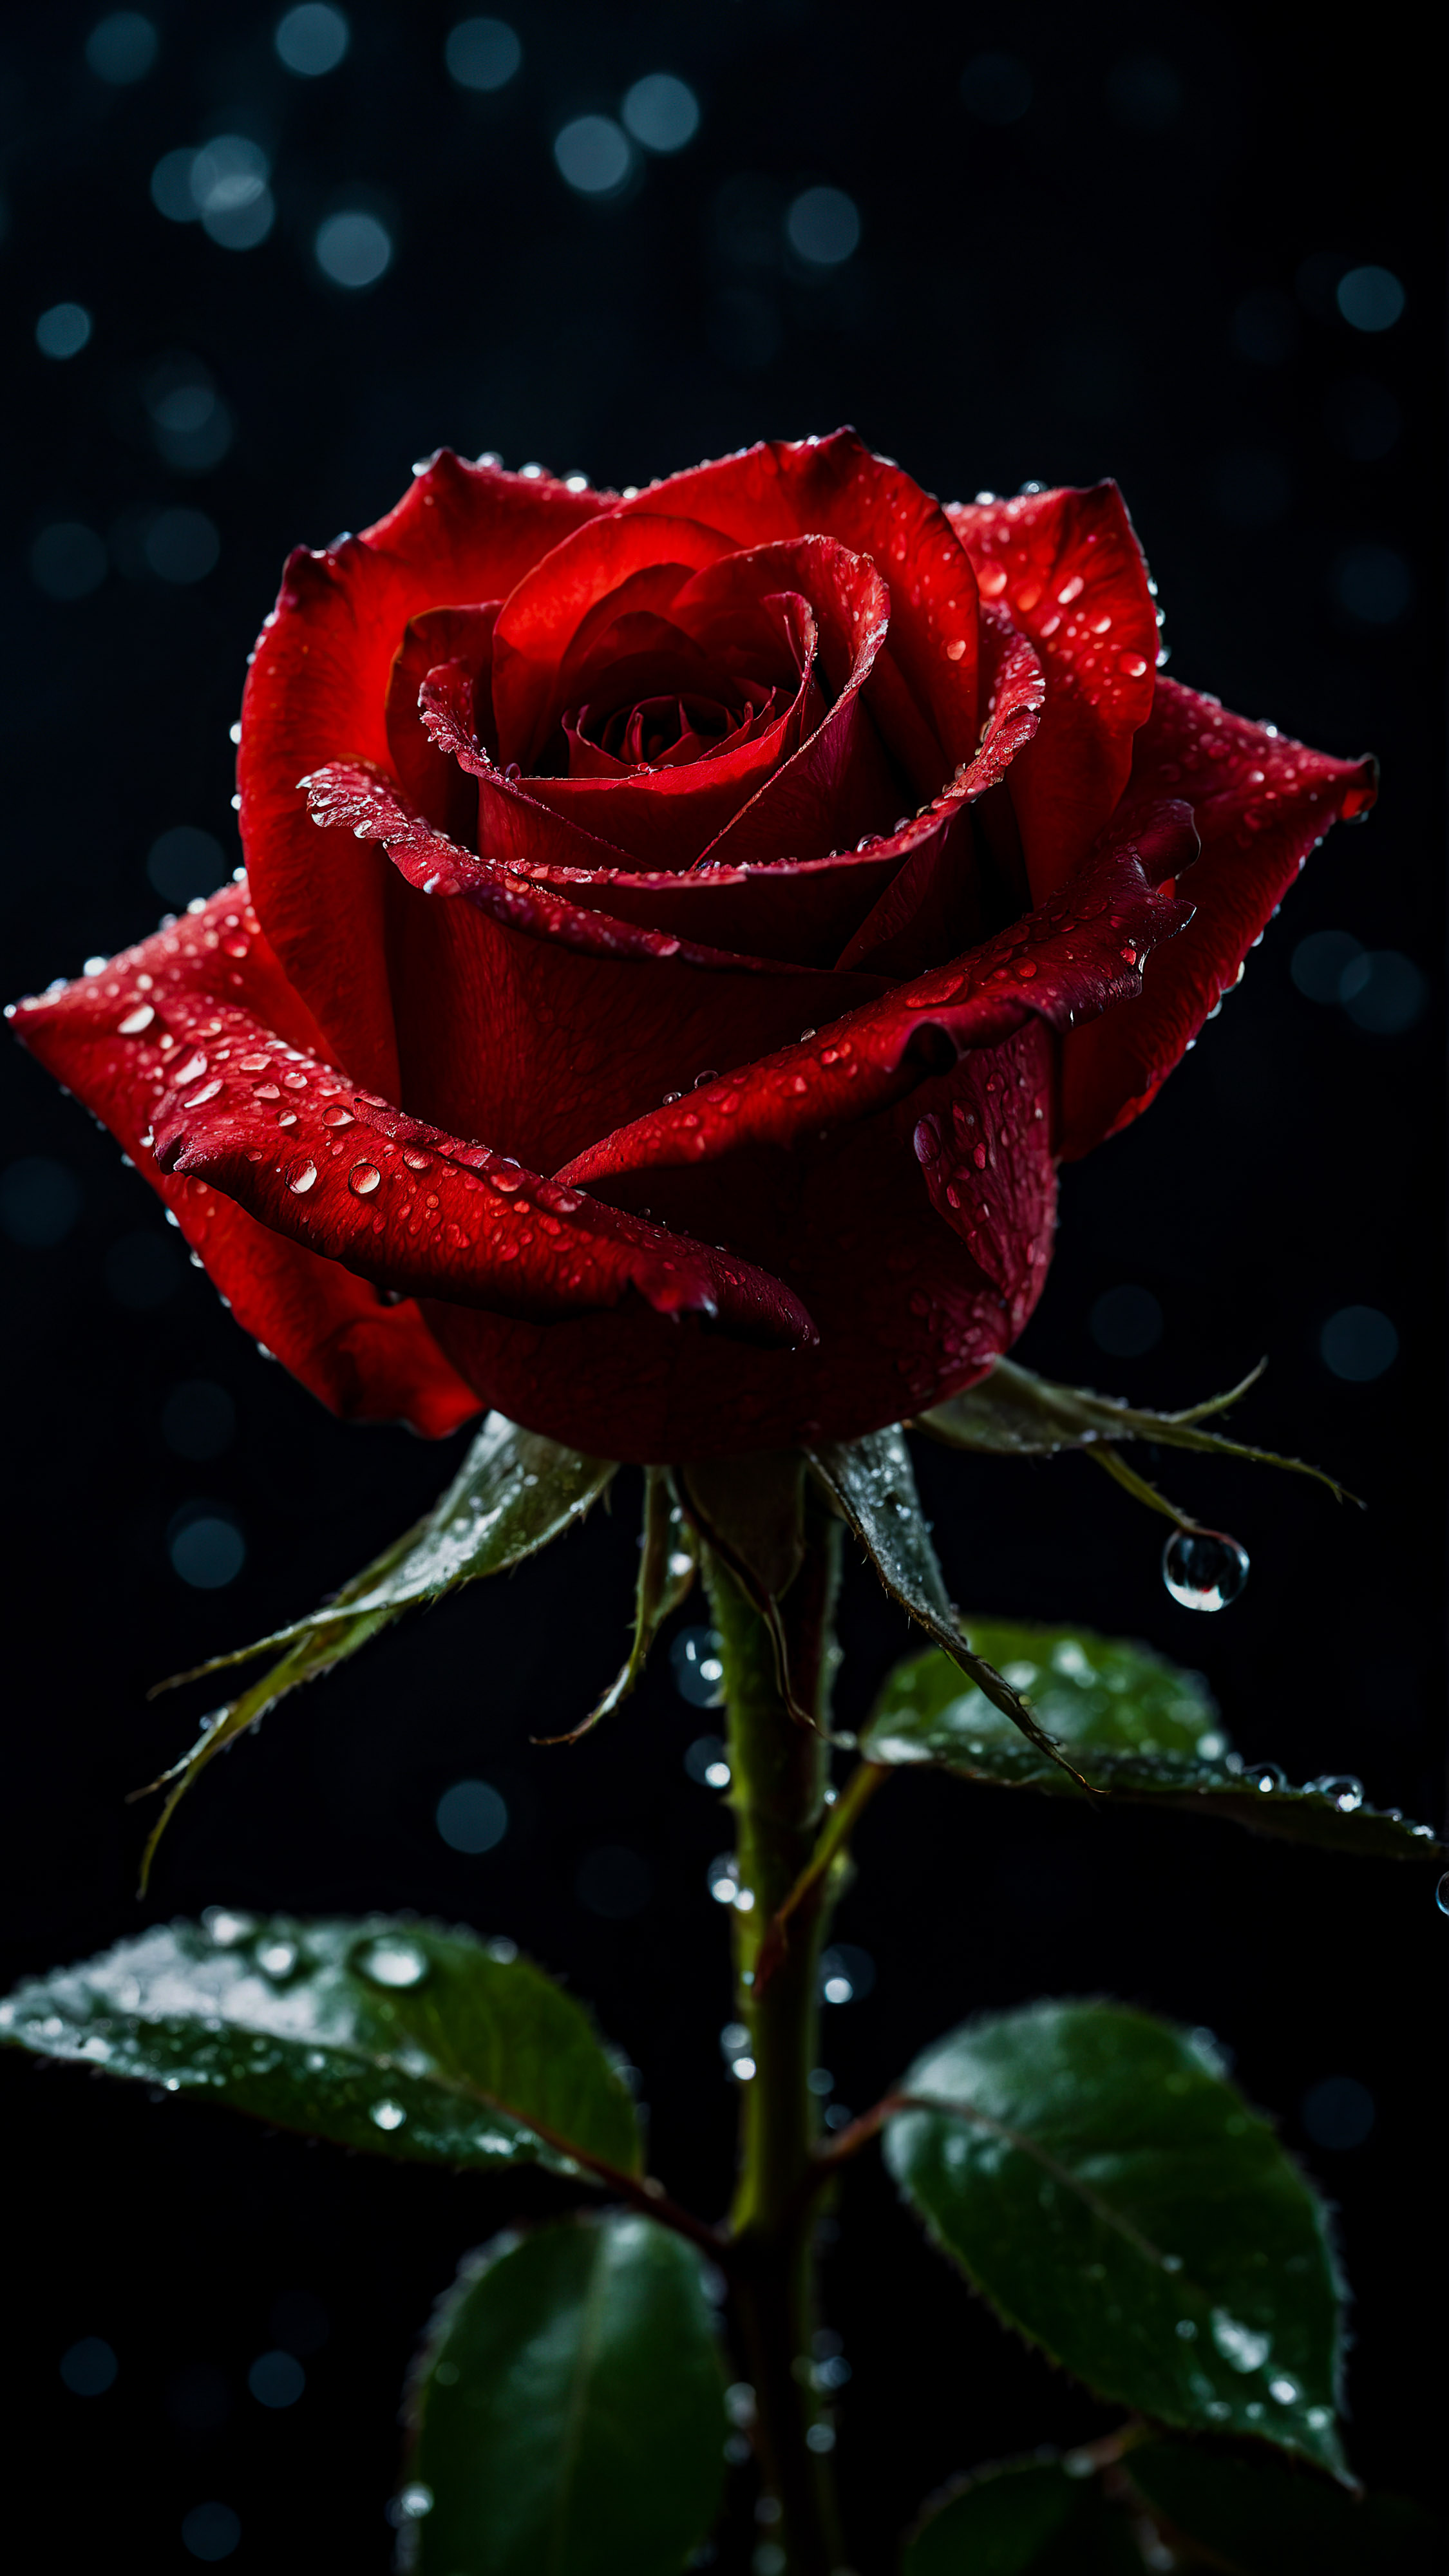 Admirez l'élégance de notre beau fond d'écran iPhone style, mettant en vedette une rose rouge radieuse avec des gouttes de rosée sur ses pétales, dans un cadre sombre et dramatique avec des lumières verticales filtrant en arrière-plan.